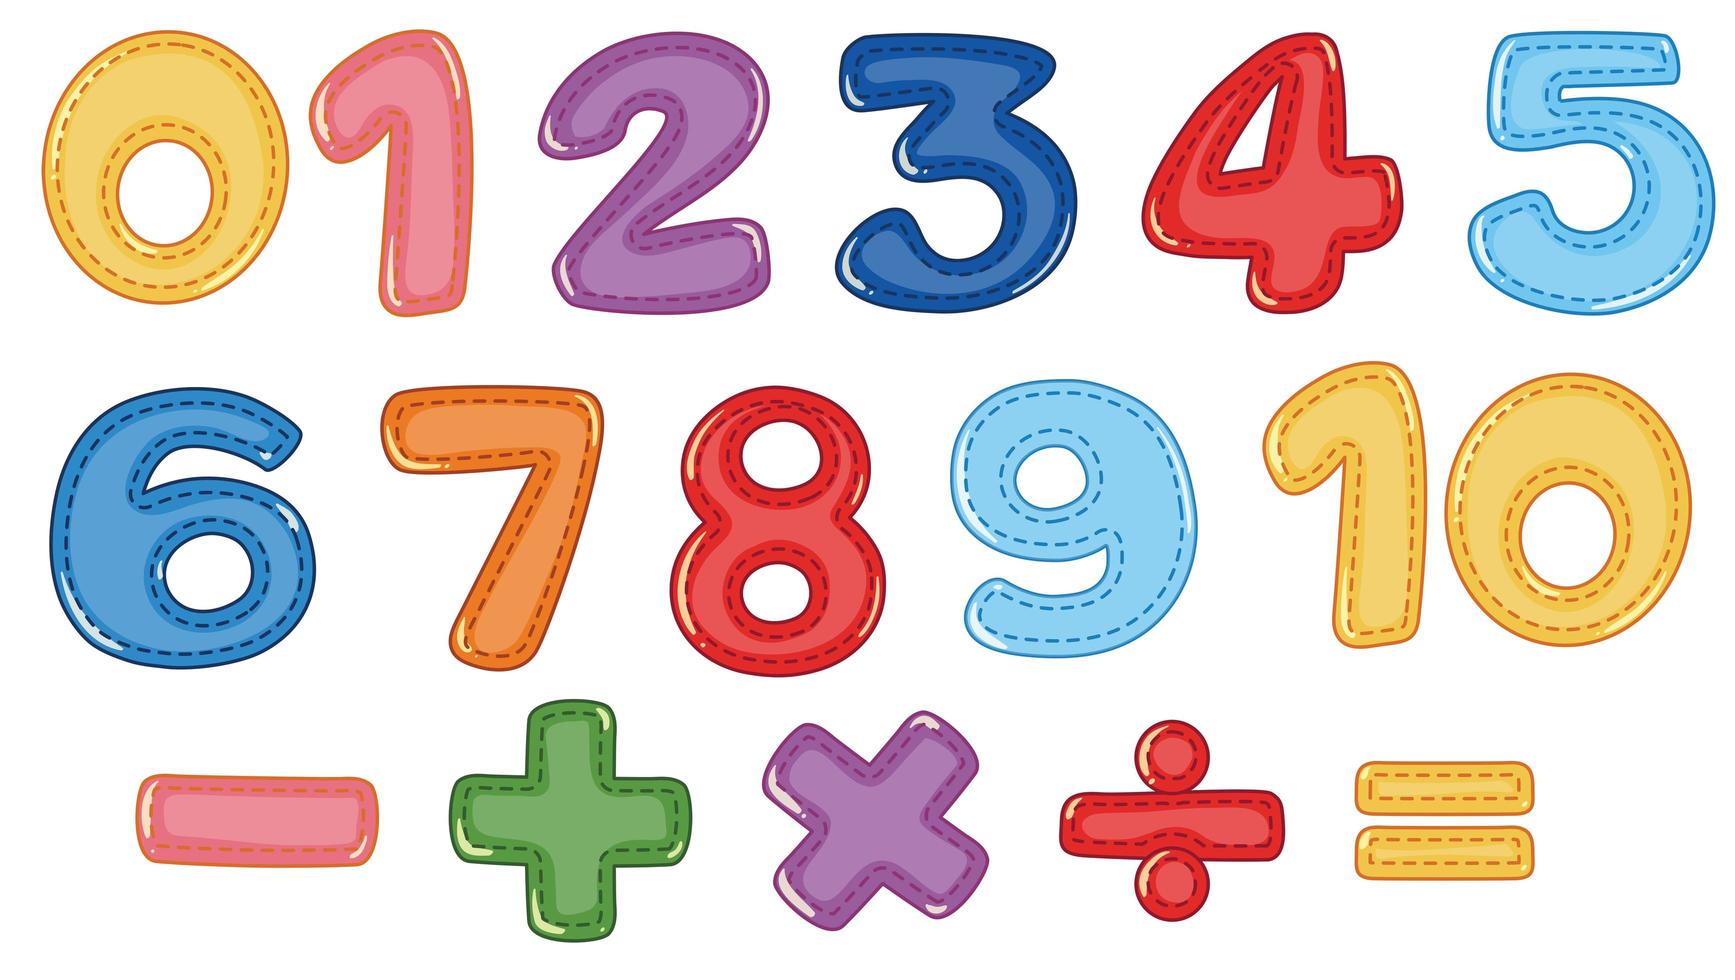 Um conjunto de símbolos numéricos e matemáticos vetor